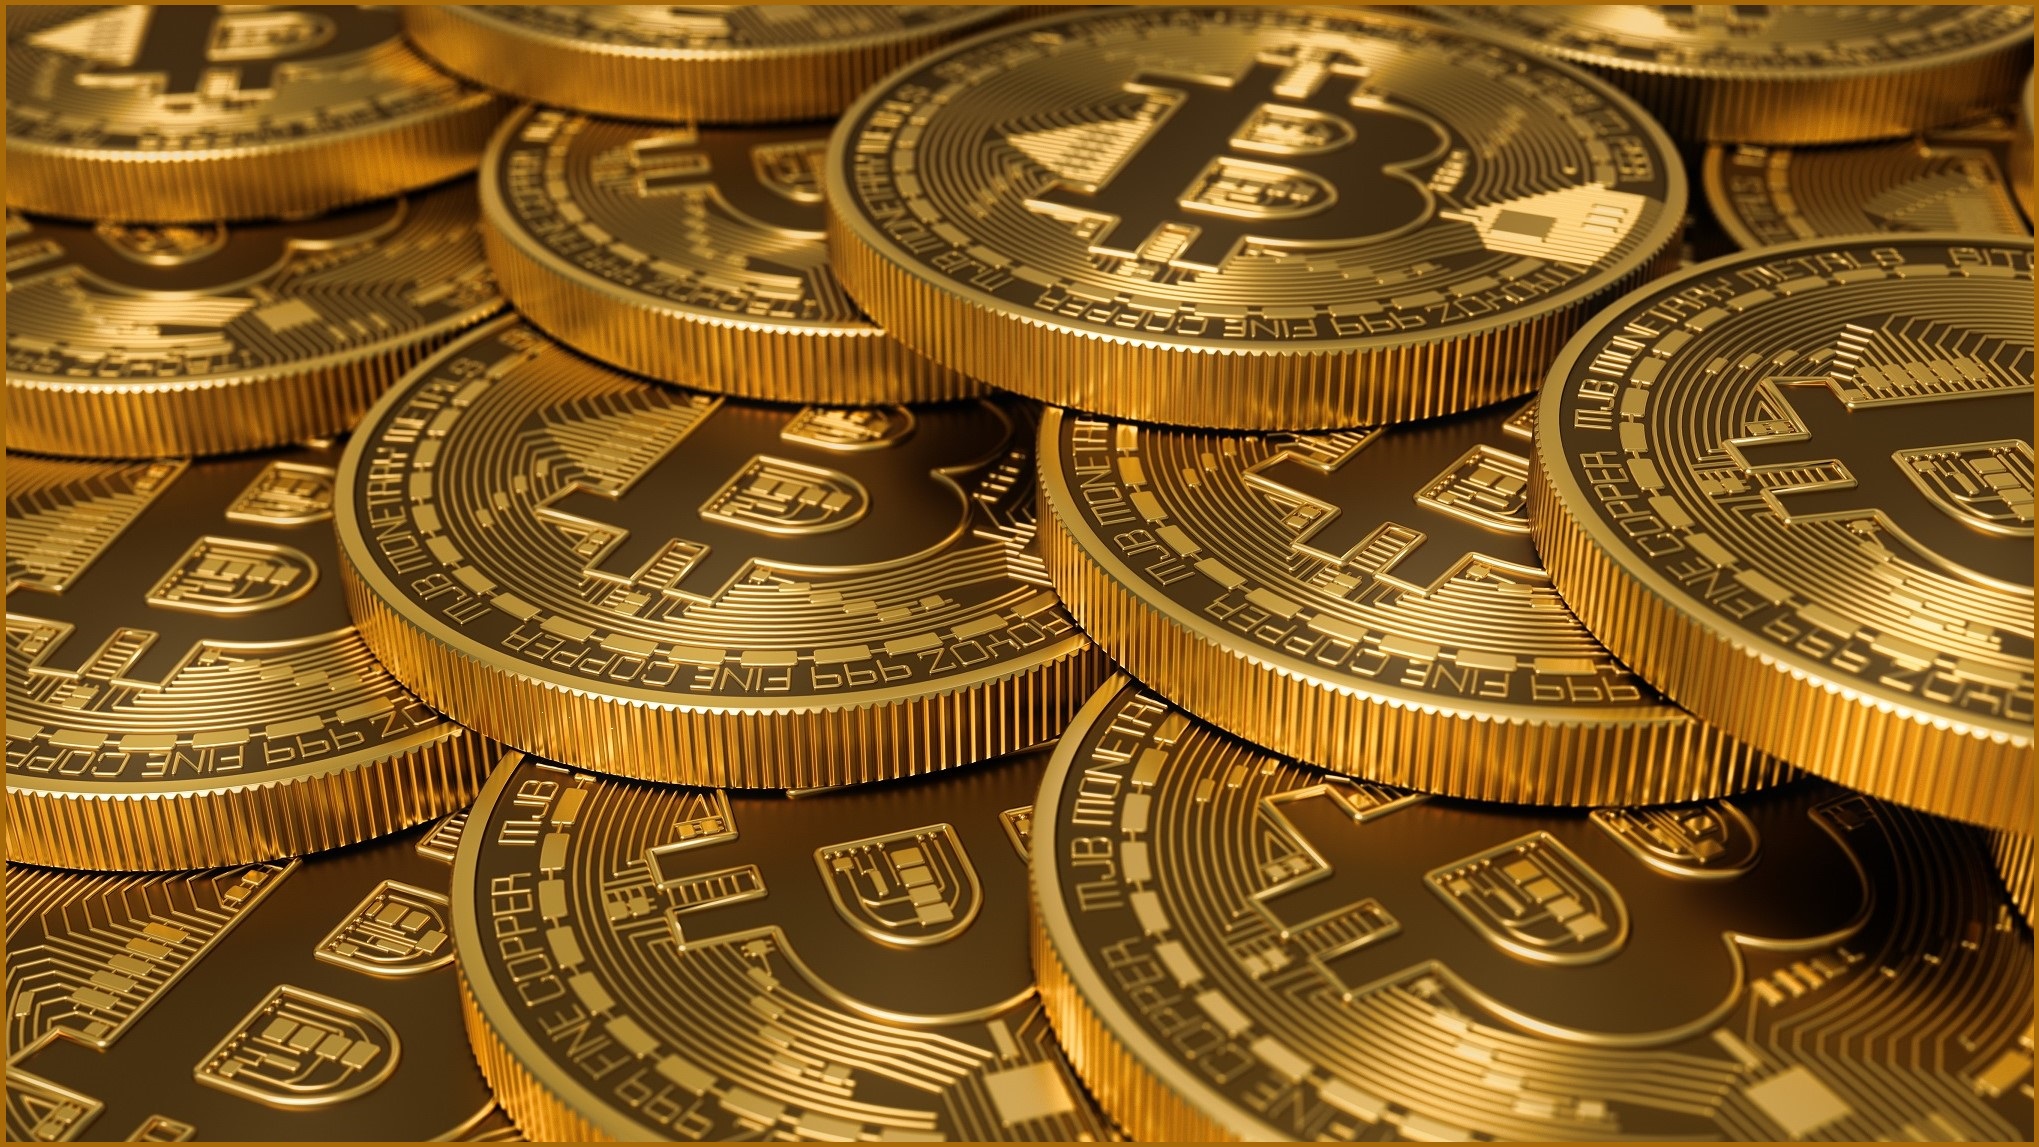 1 billion in bitcoin